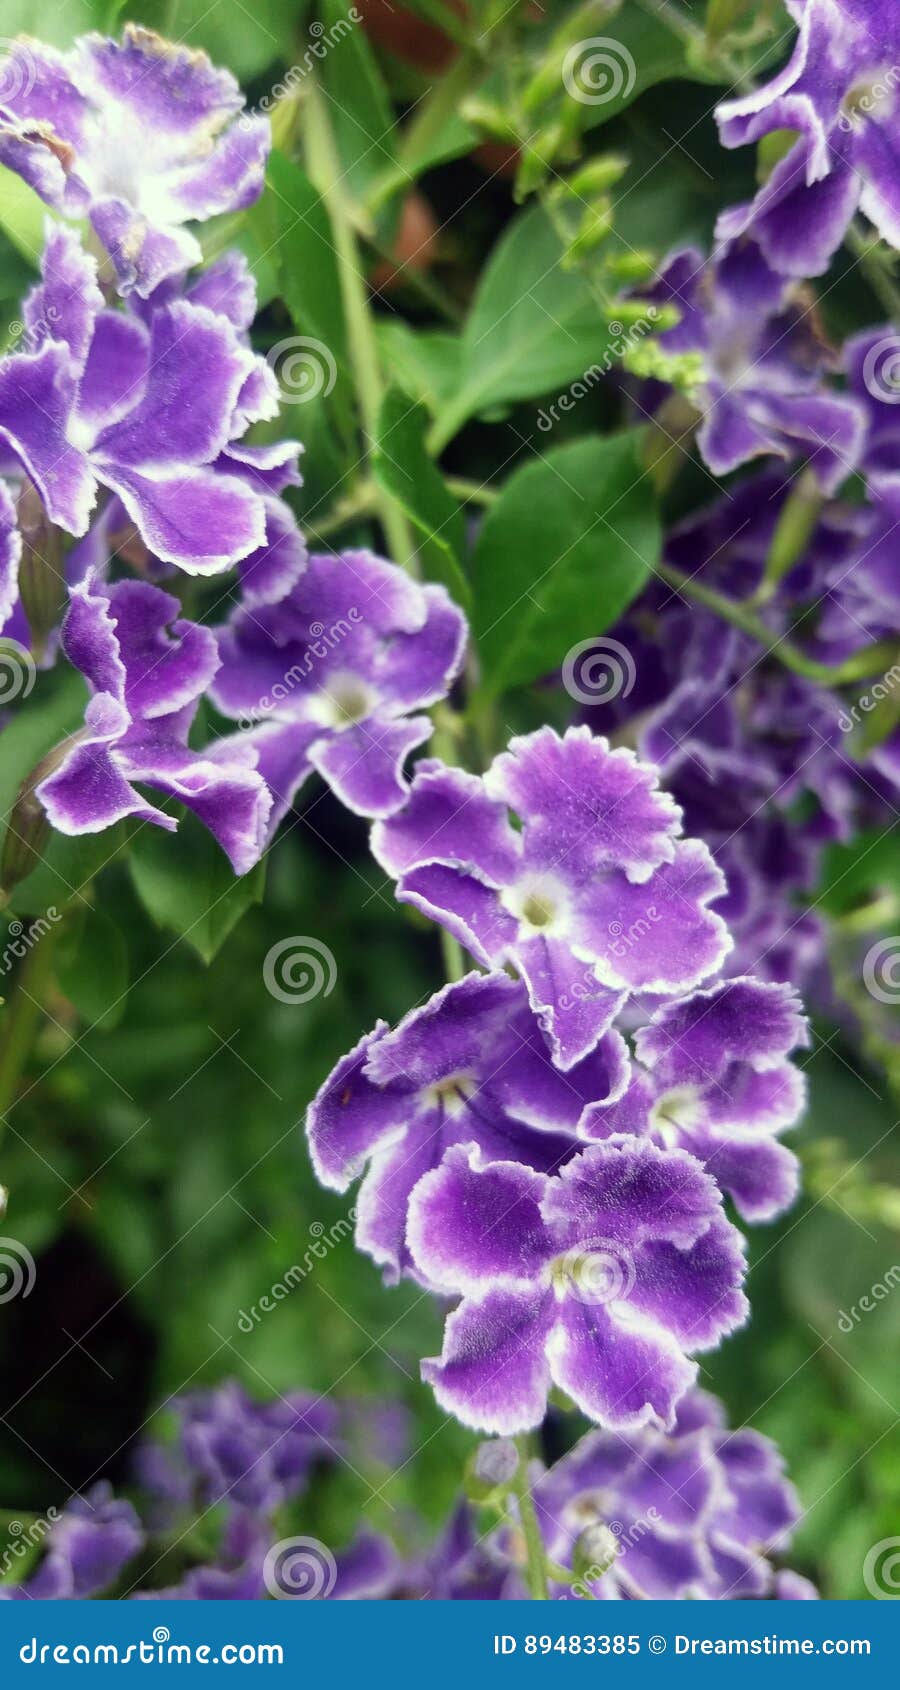 Duranta Fleurs Violettes Bush a Fleuri Détail De Petites Fleurs Violettes  Et Blanches Image stock - Image du buisson, jardins: 89483385